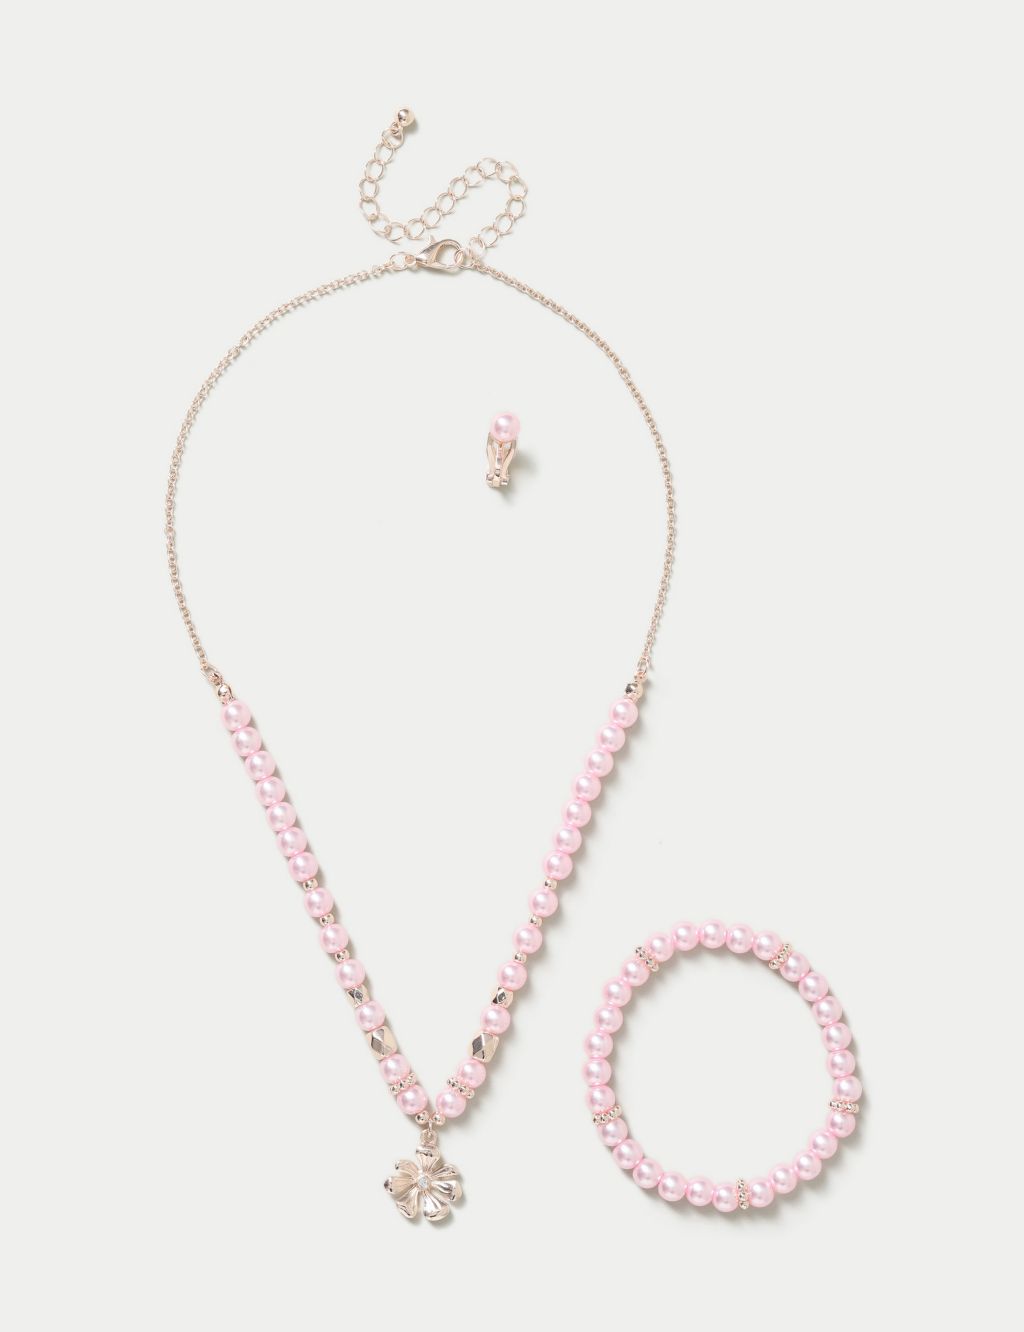 Daisy Pink Necklace and Bracelet Set